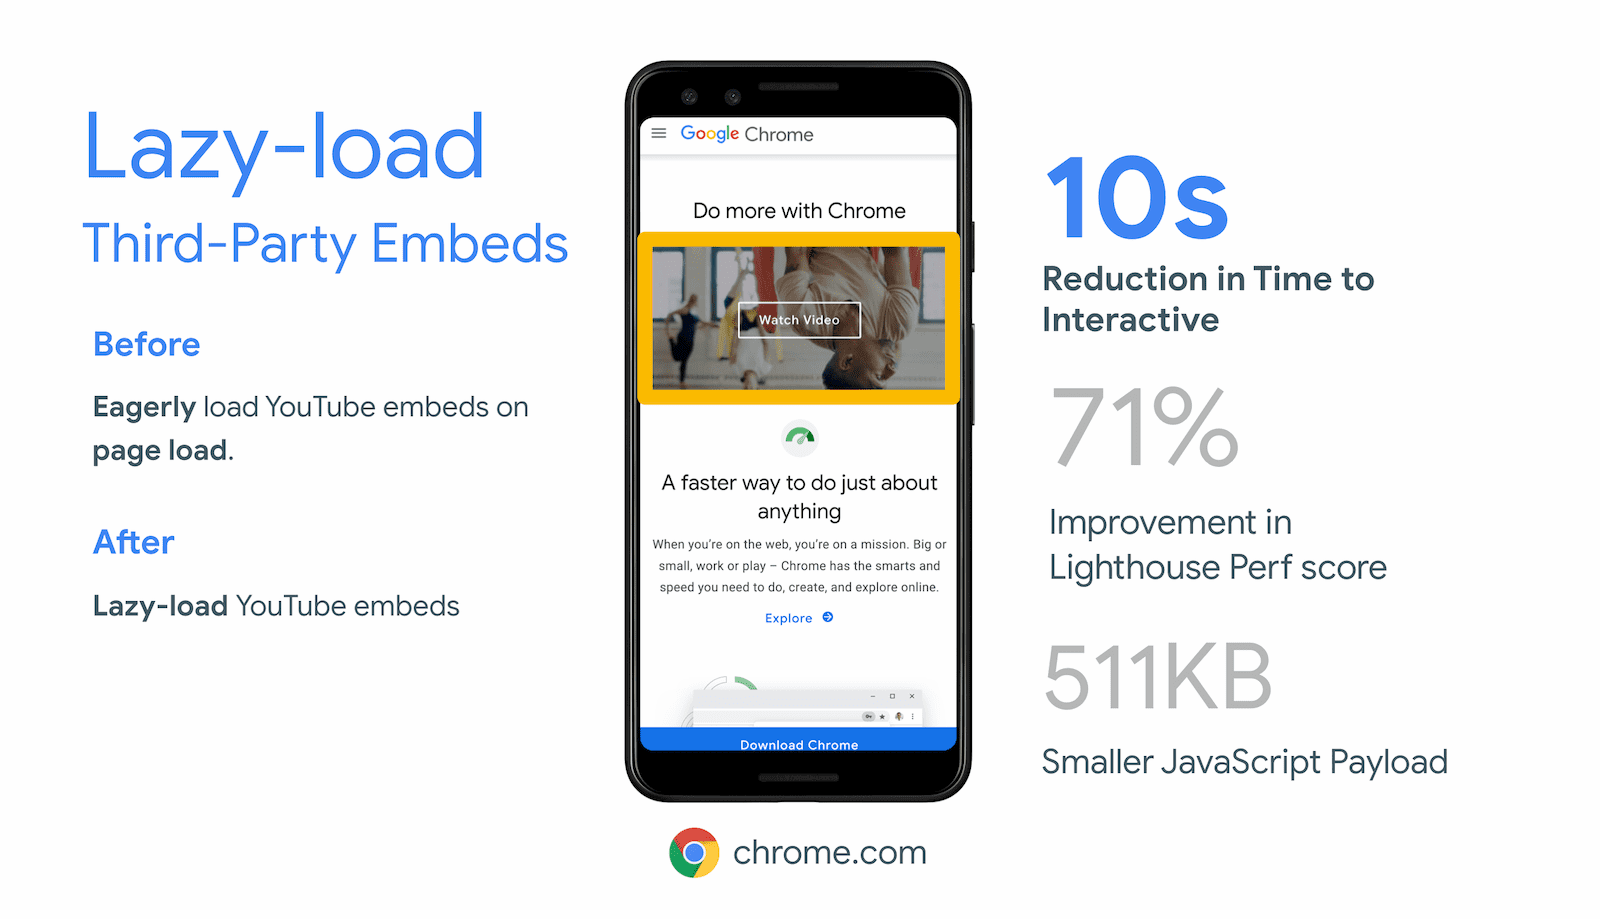 Chrome.com ha ottenuto una riduzione di 10 secondi del tempo all&#39;interattività grazie al caricamento lento degli iframe fuori schermo per l&#39;incorporamento dei video di YouTube